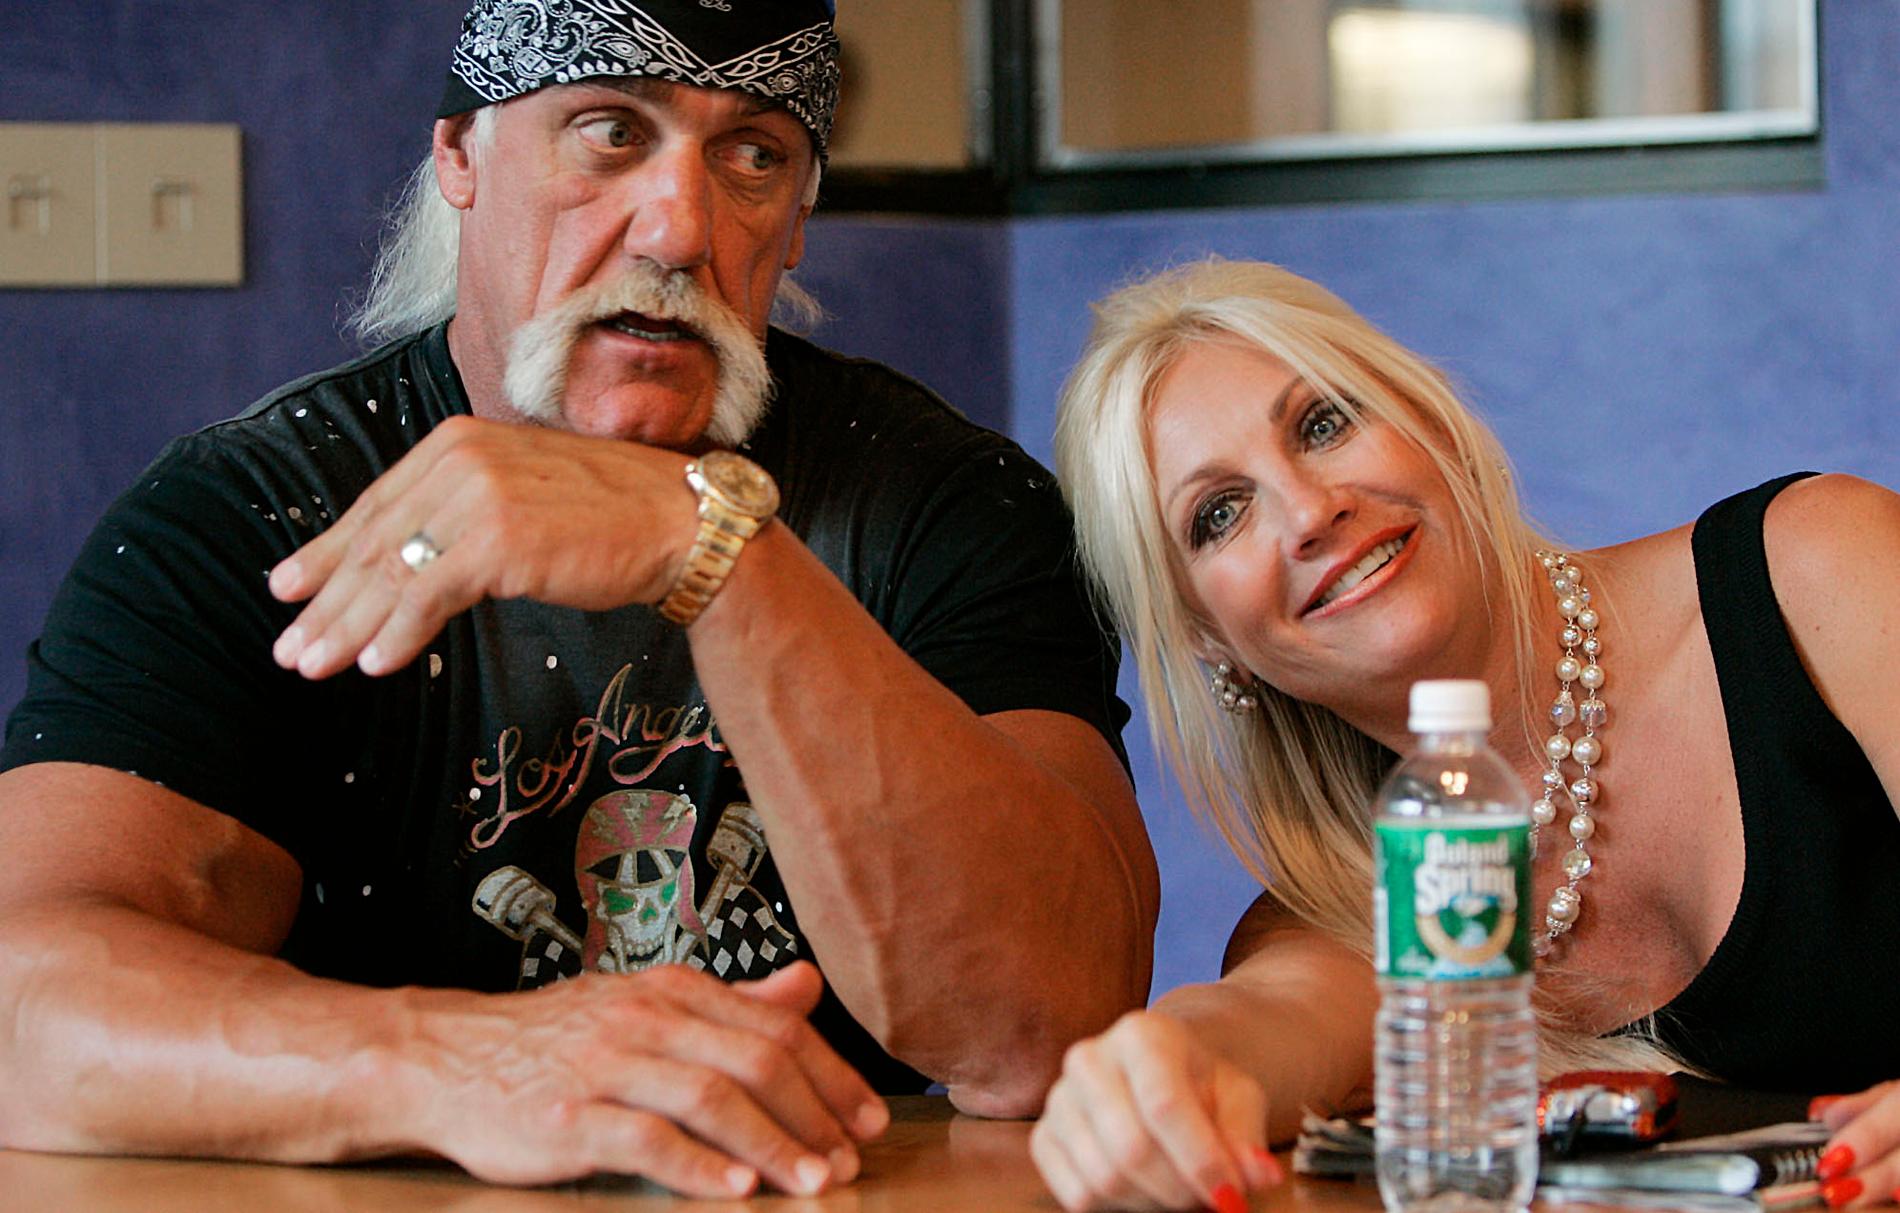 – SKILJAS? DET HADE JAG INGEN ANING OM. Det var en reporter som berättade för Hulk Hogan att hans fru Linda lämnat in skilsmässopappren till en domstol.